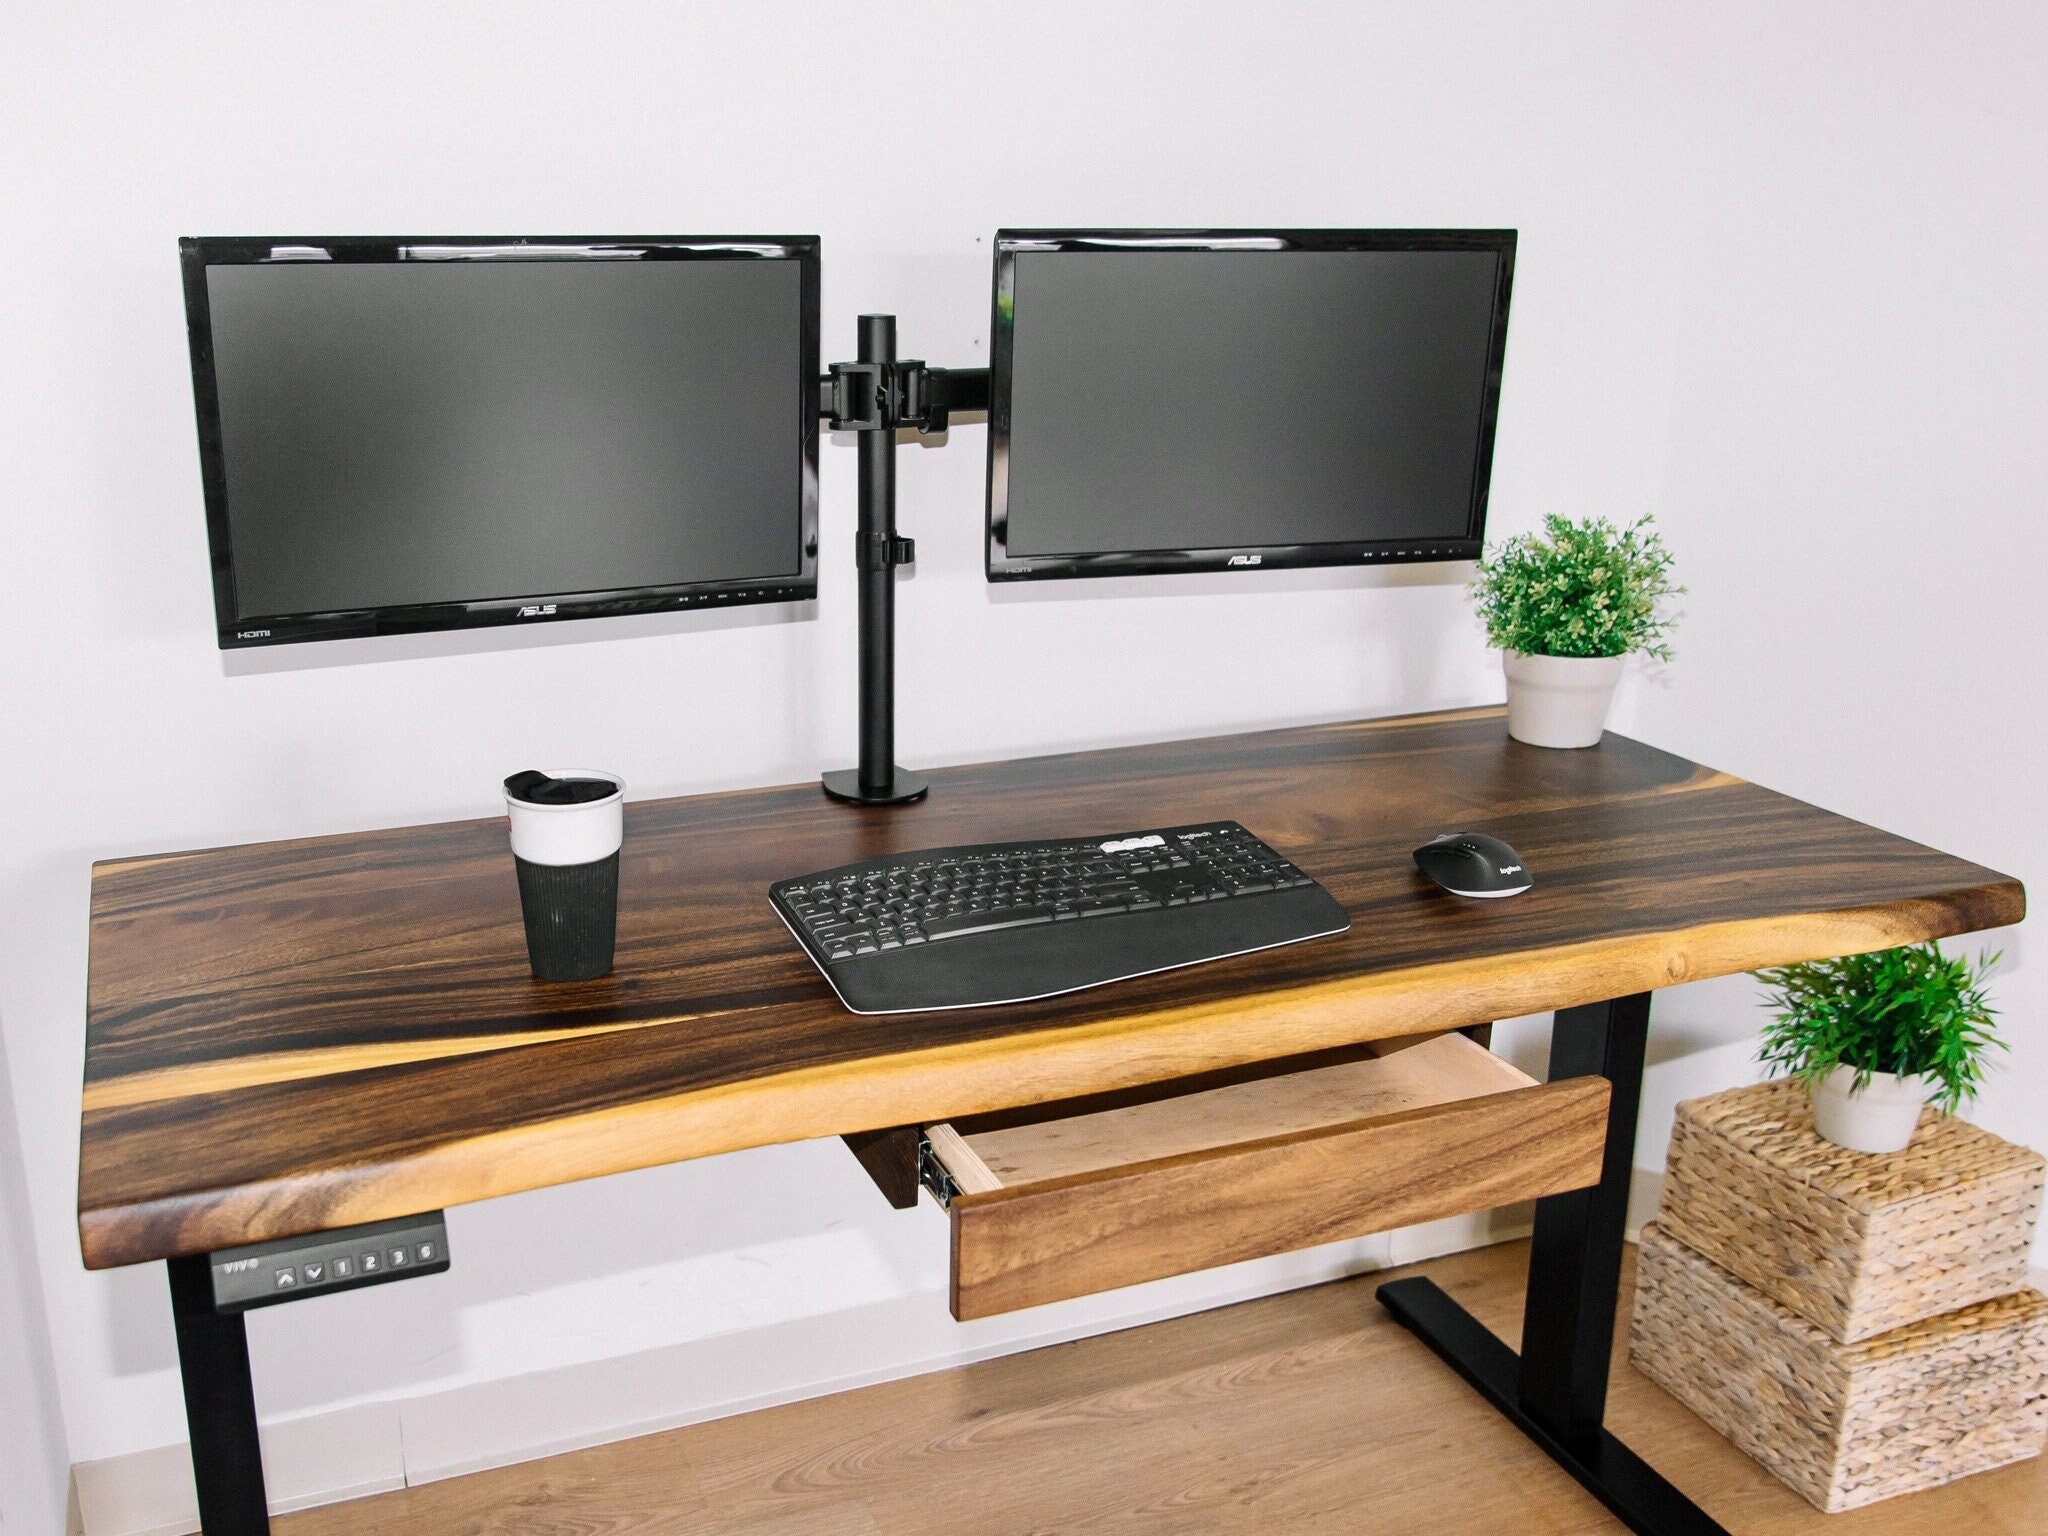 Wood Drawer | Drawer Under Desk Storage | Desk Storage | Desk Organizer | Desk Accessories | Top | Office Desk | Desk